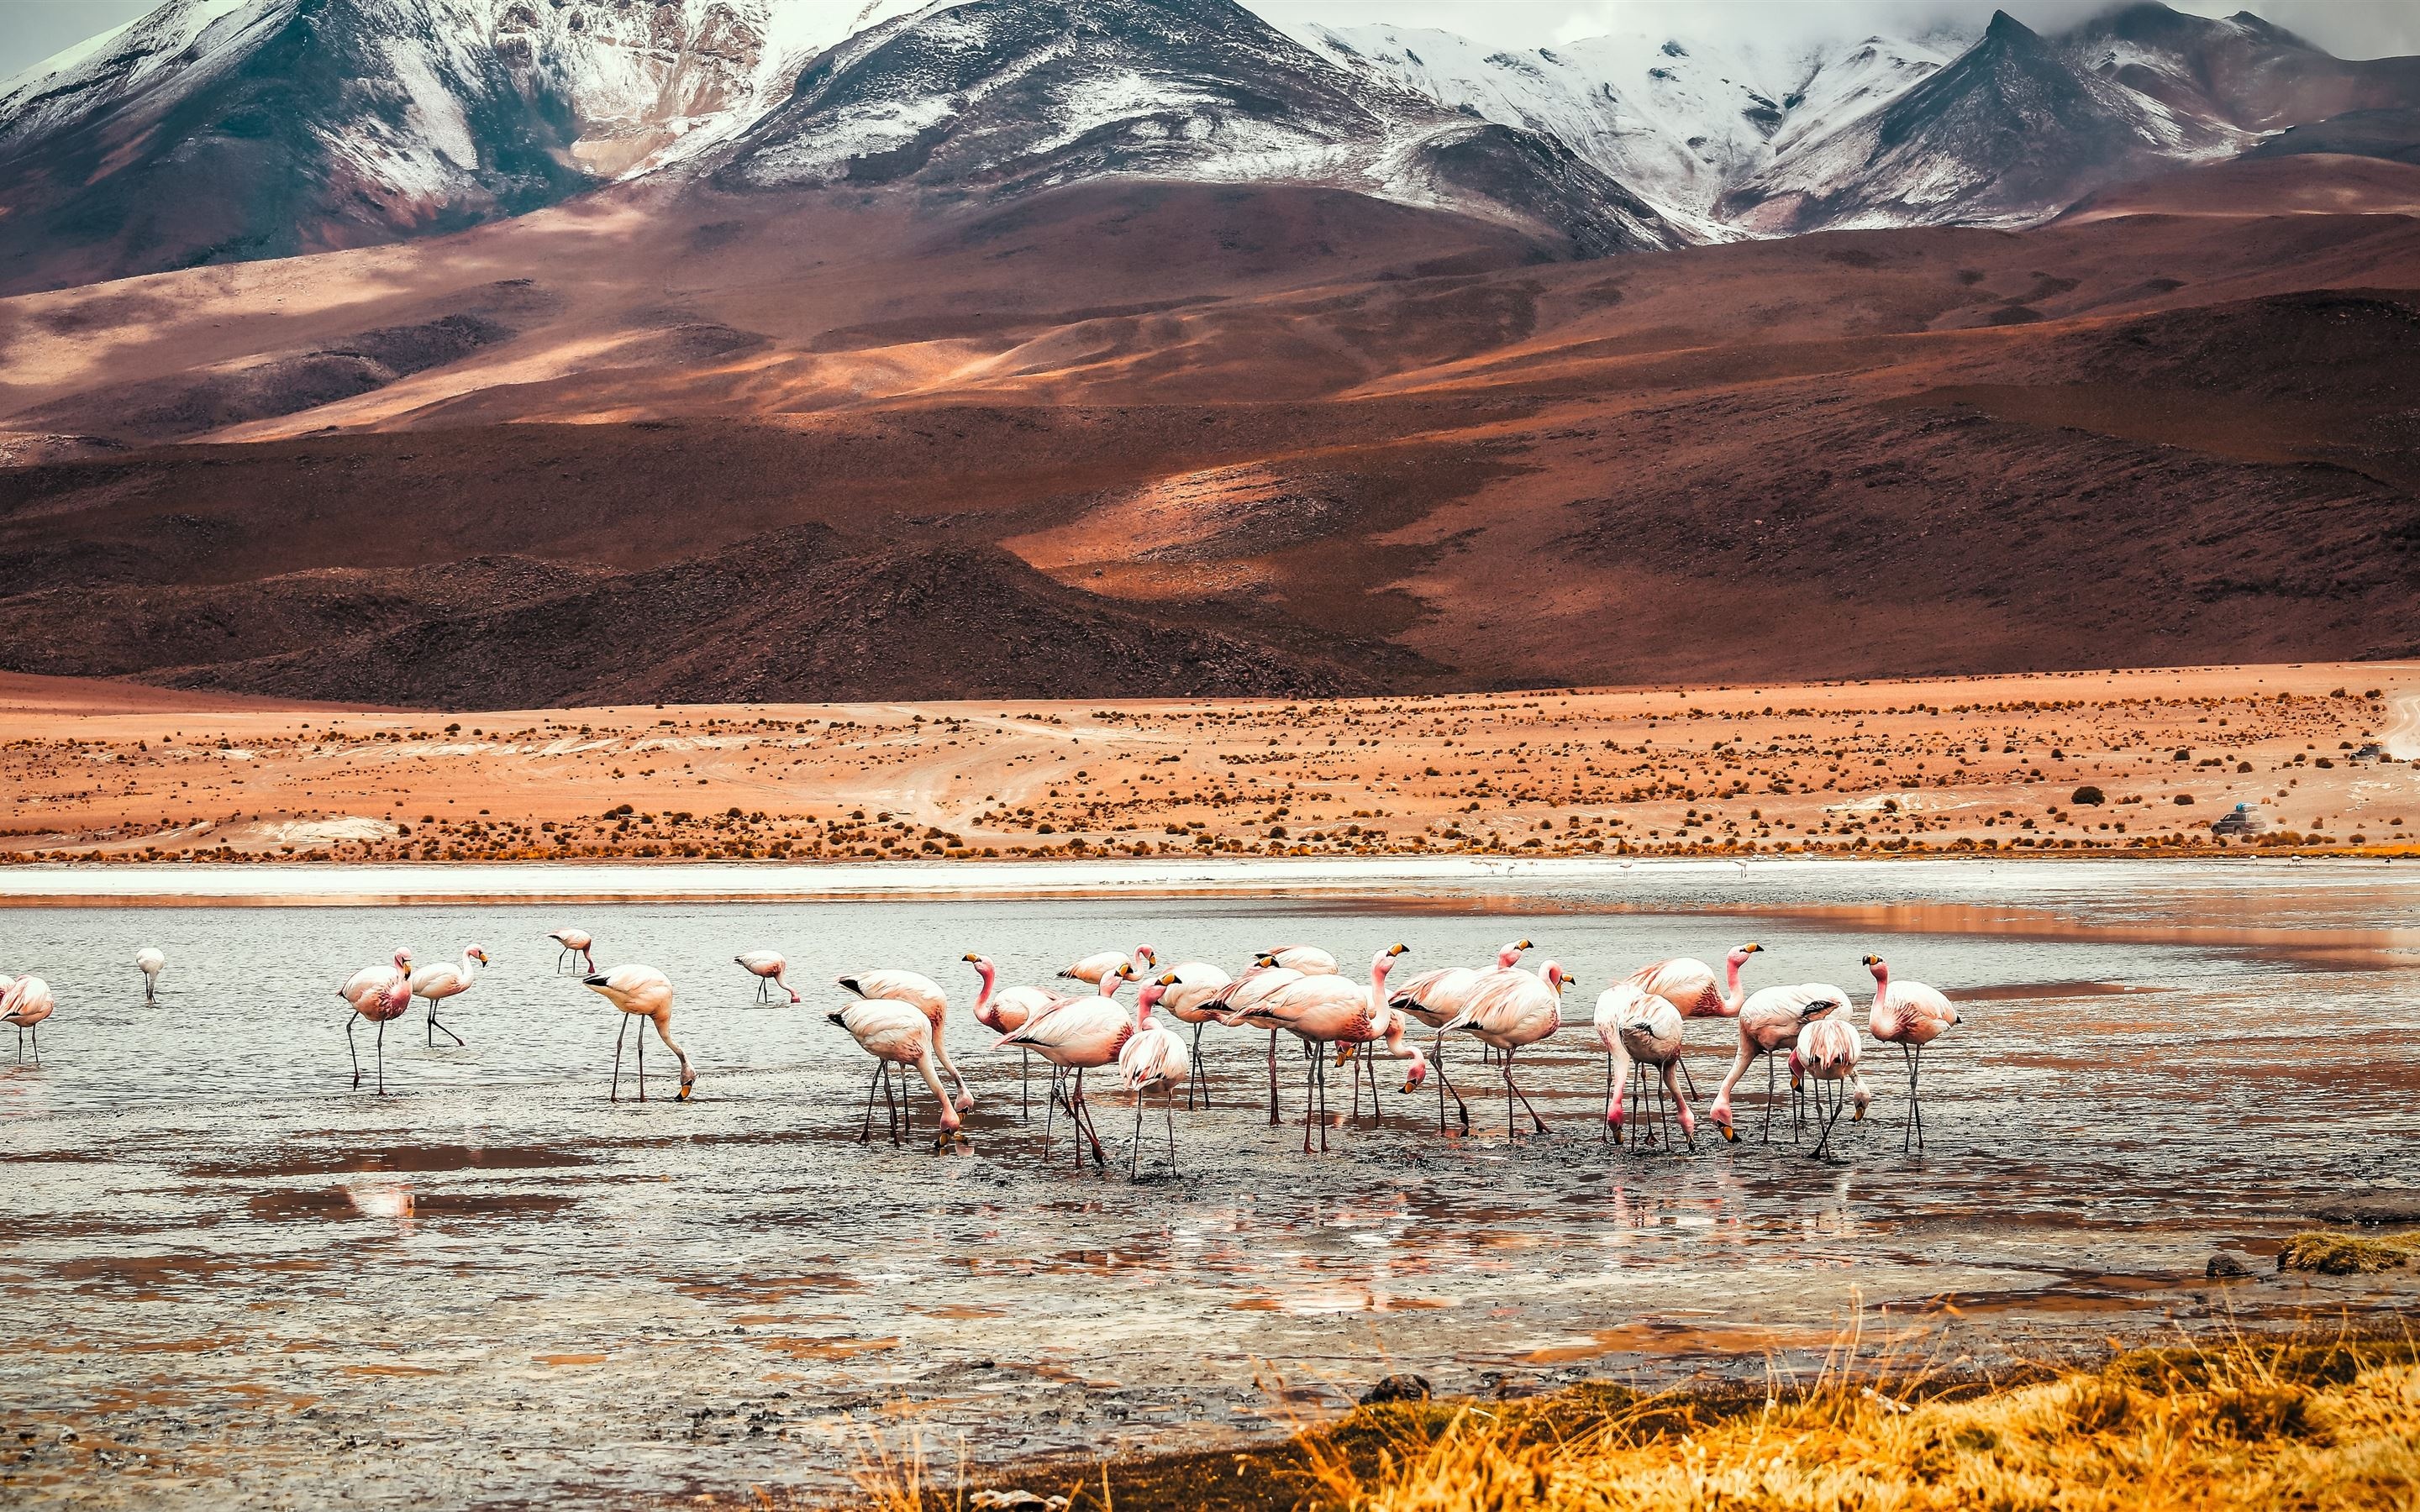 Flamingo lake of Bolivia, MacBook Air wallpaper, 2880x1800 HD Desktop